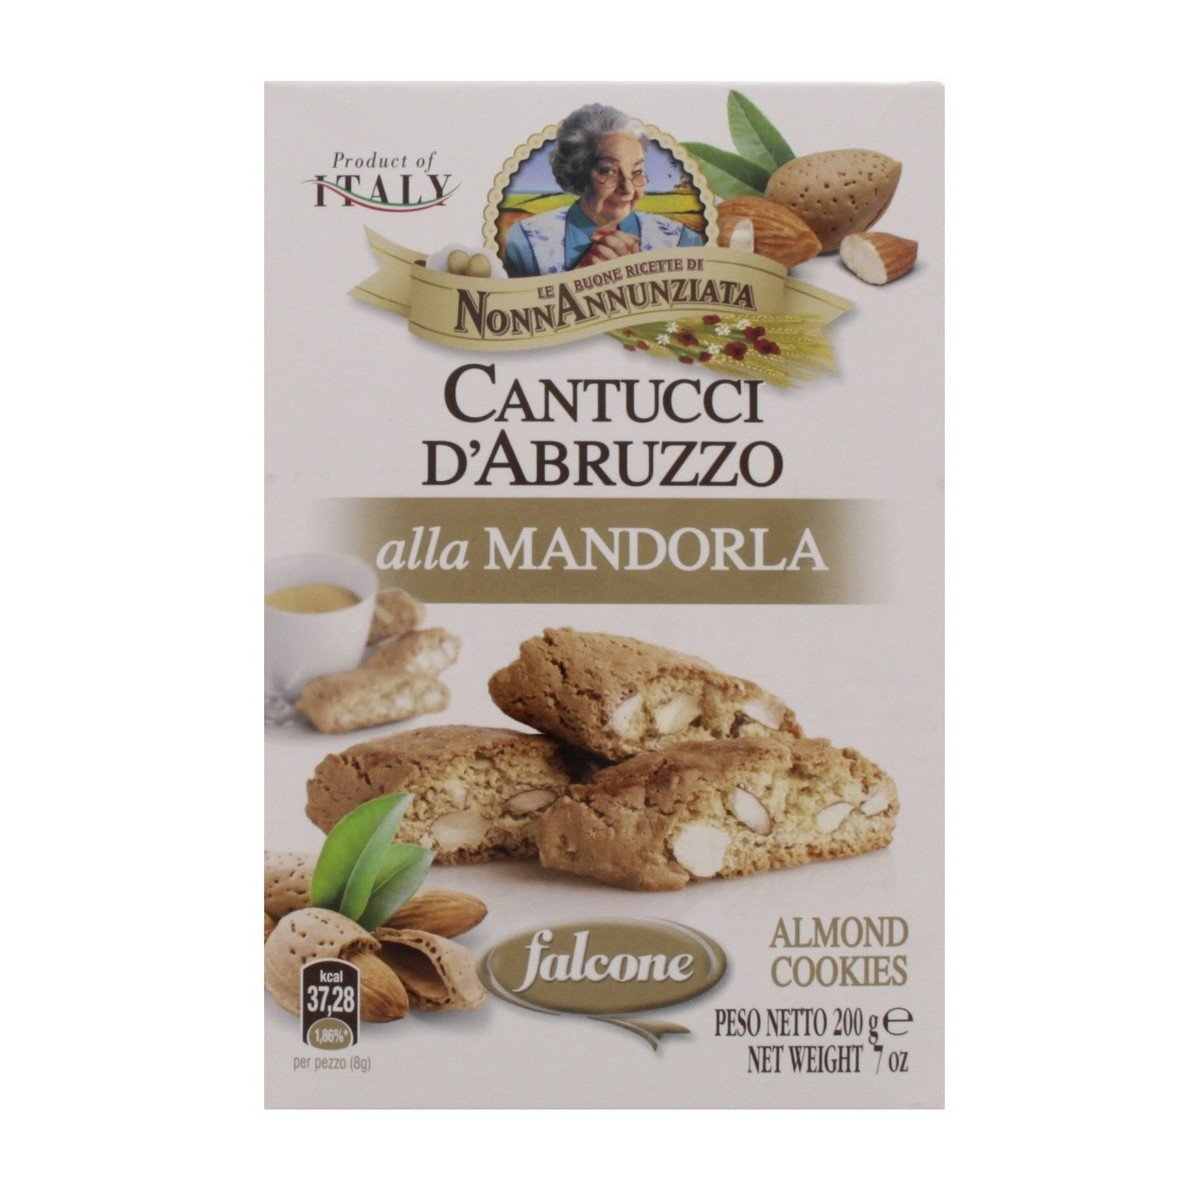 Nonn Annunziata Almond Cookies 200 g